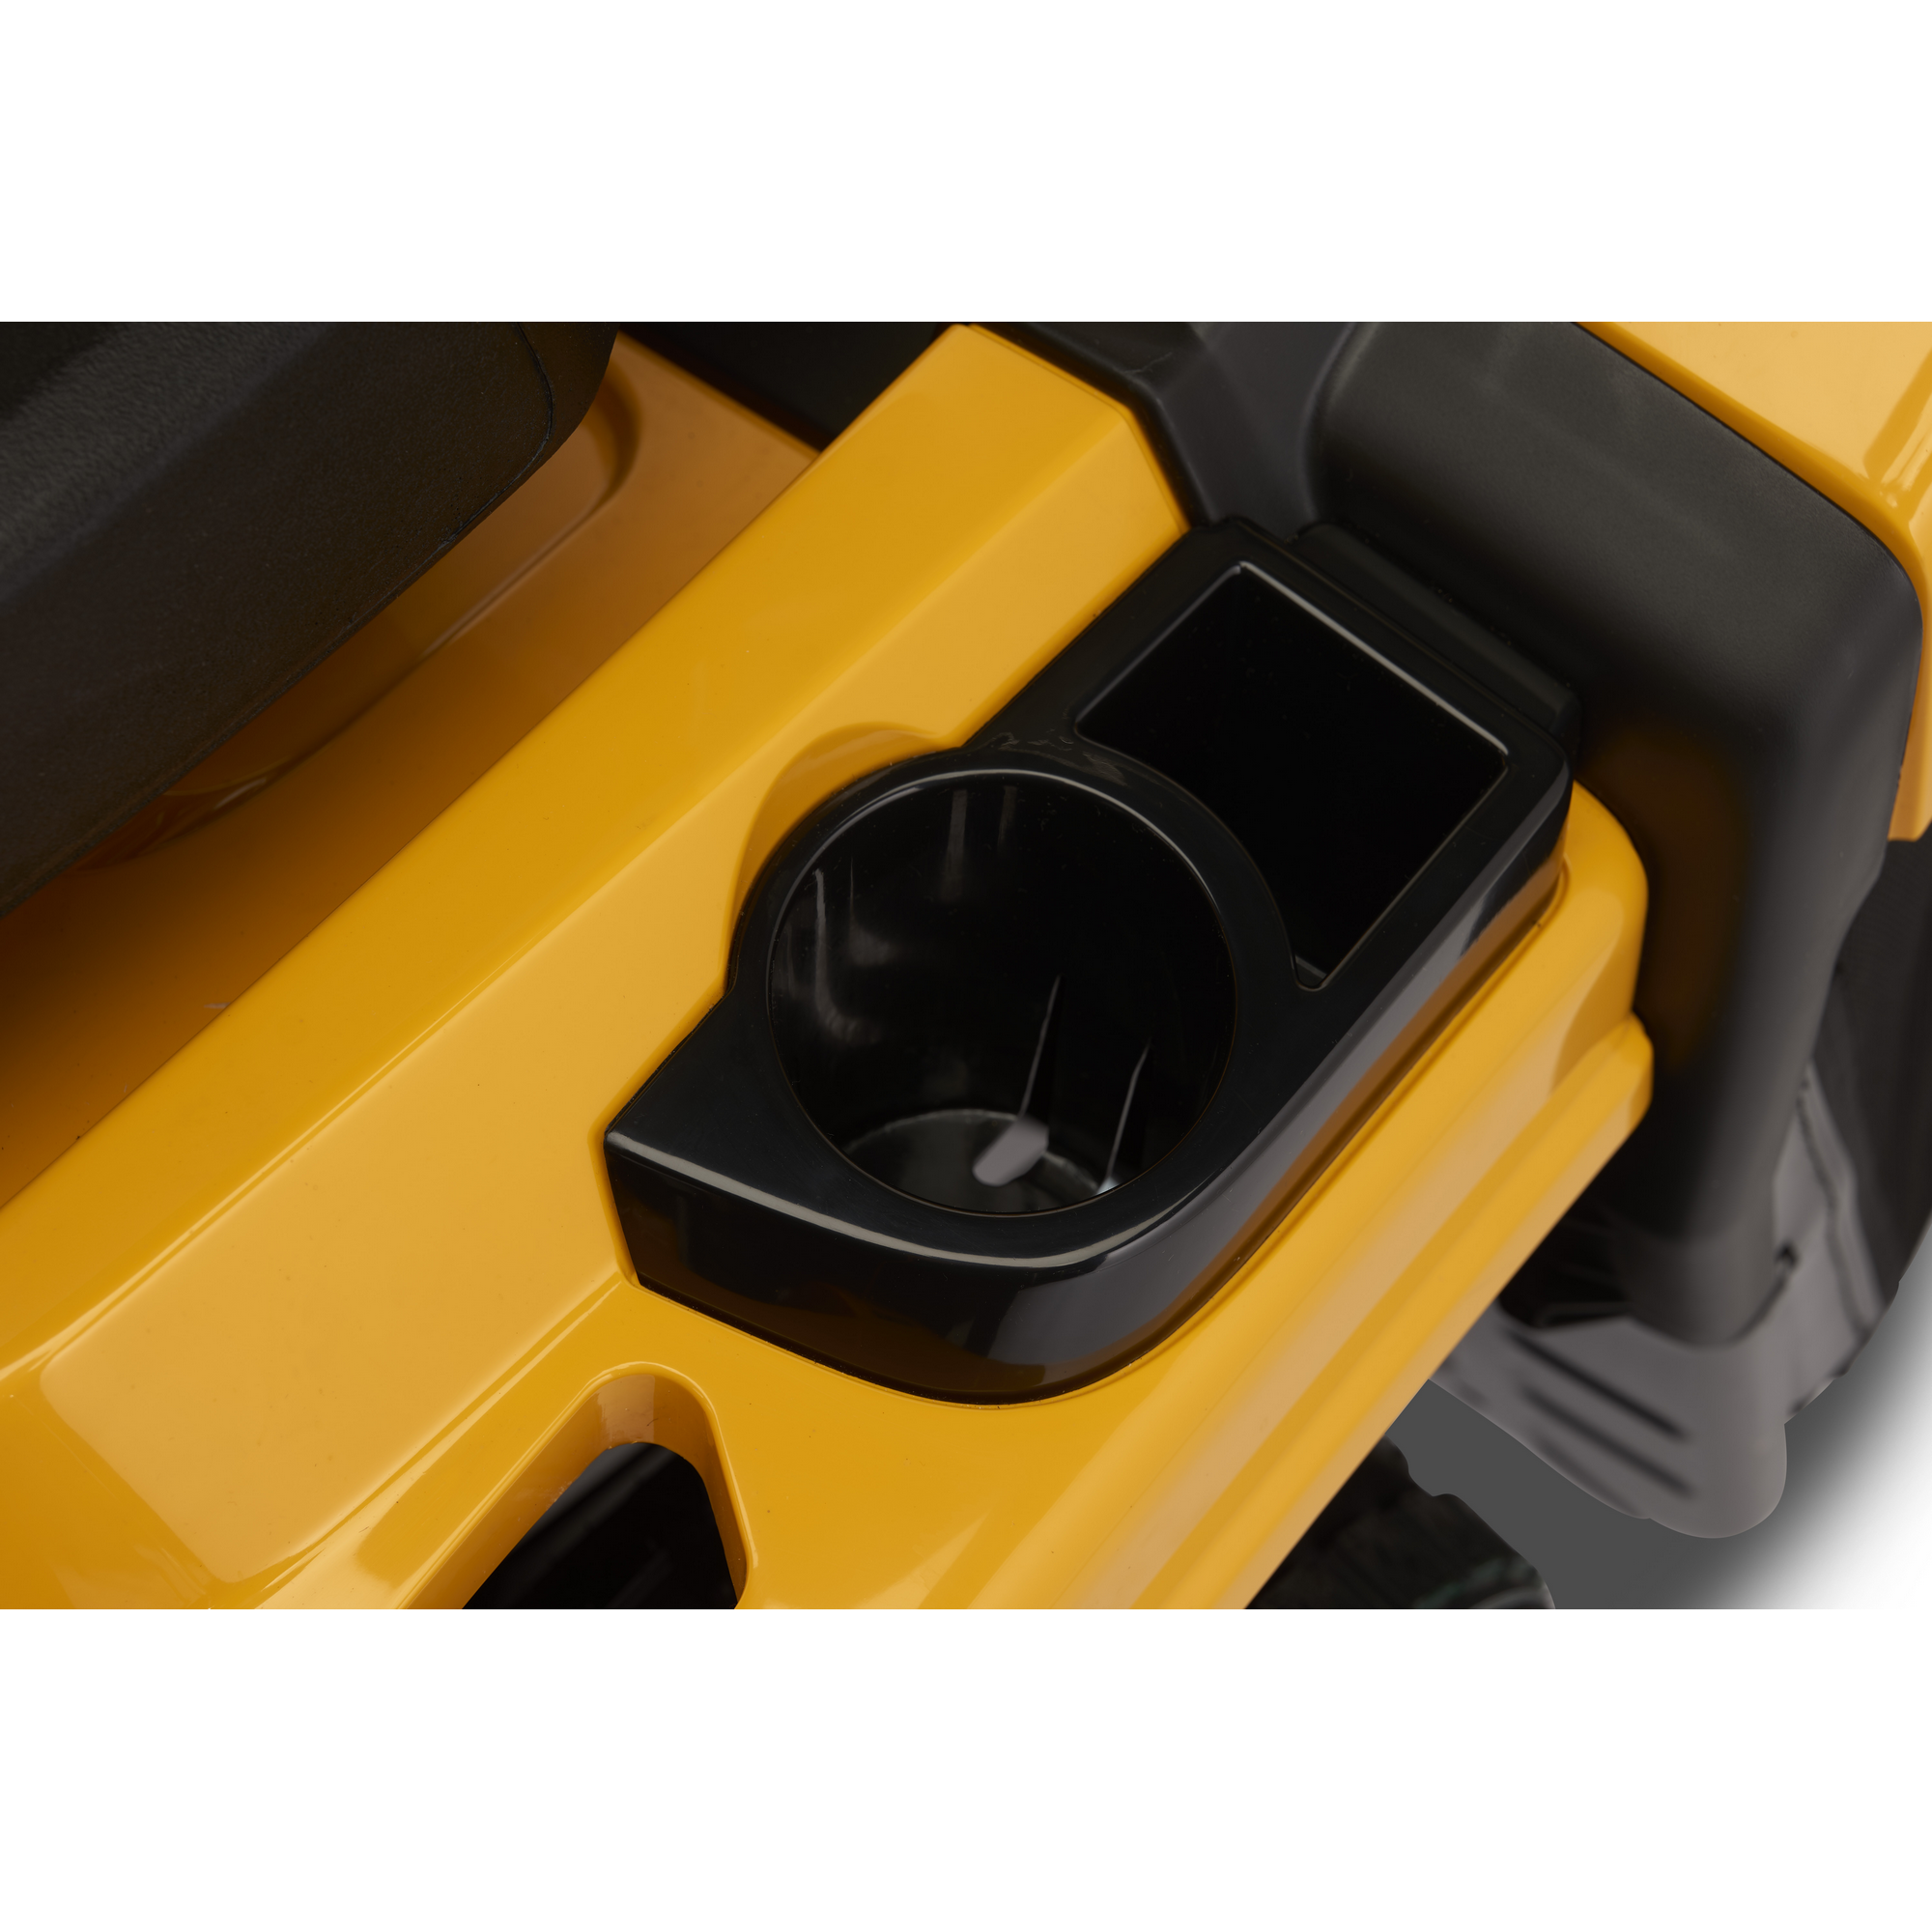 Benzin-Rasentraktor 'Estate 384' Hydrostatgetriebe, 84 cm Schnittbreite + product picture